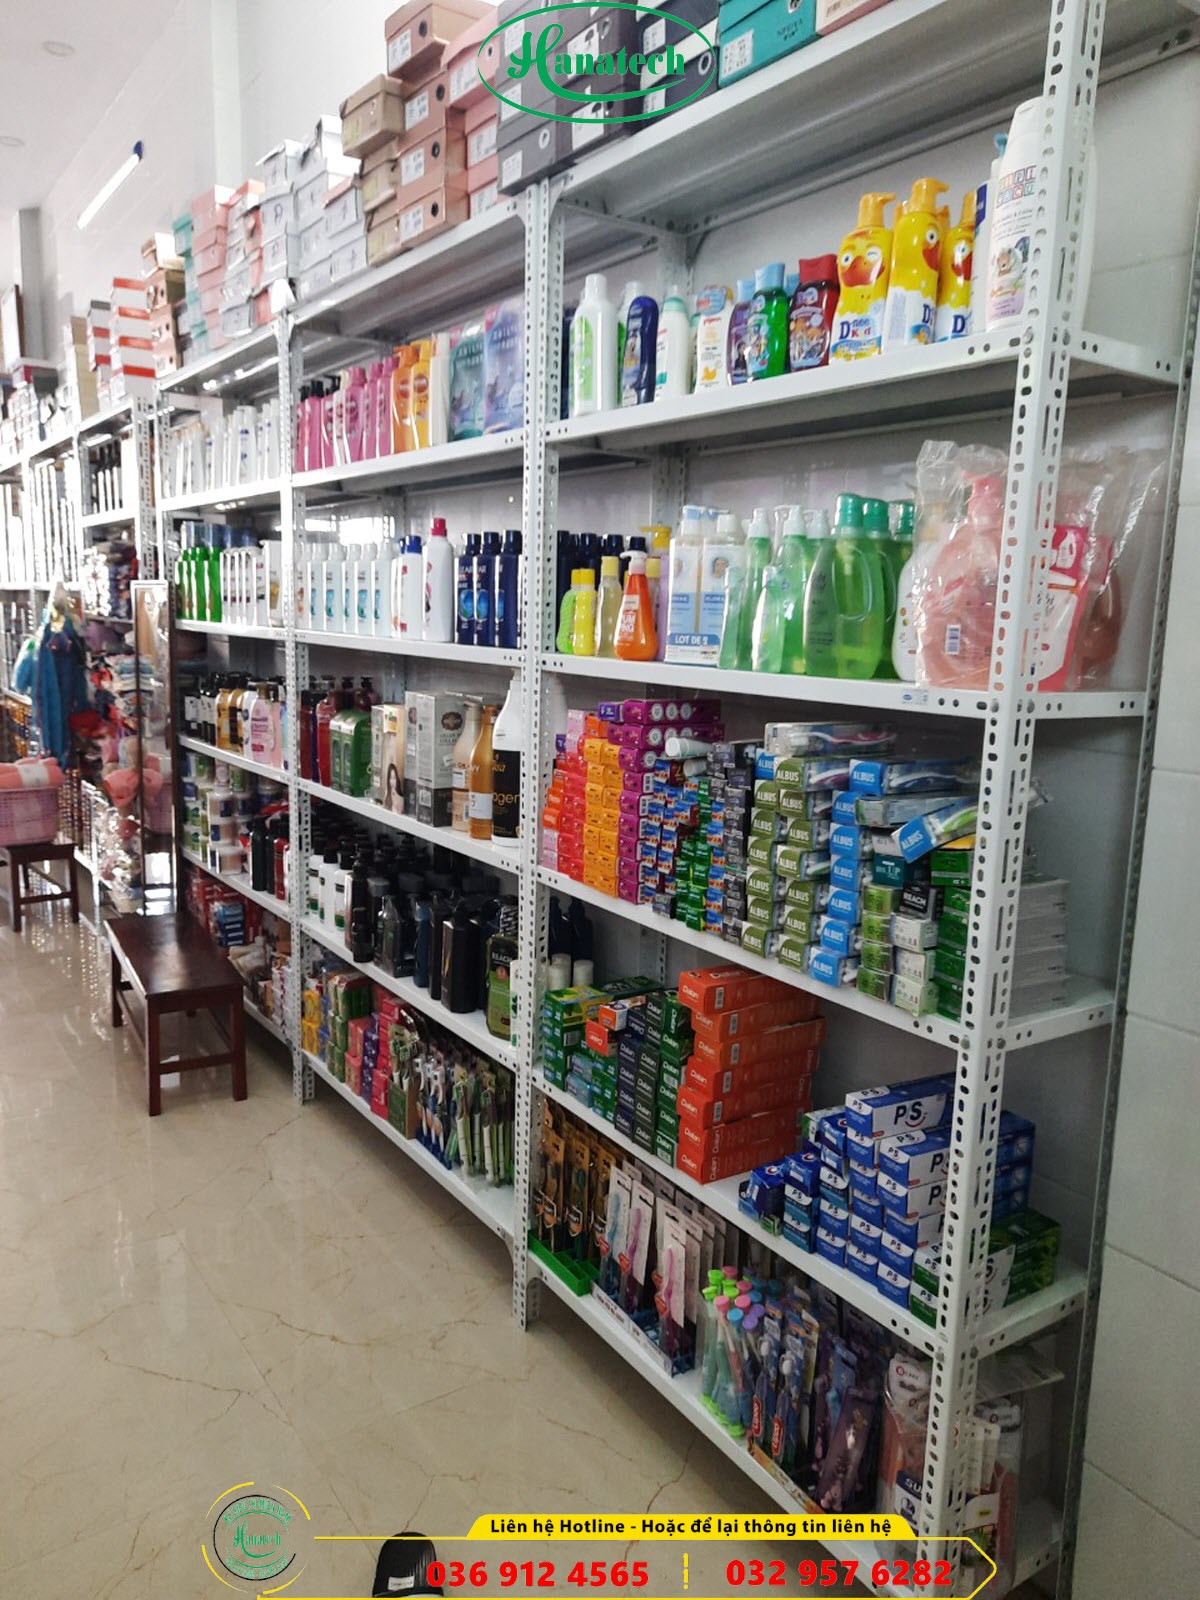 Giá kệ siêu thị cho cửa hàng bách hóa tổng hợp tại Tây Ninh